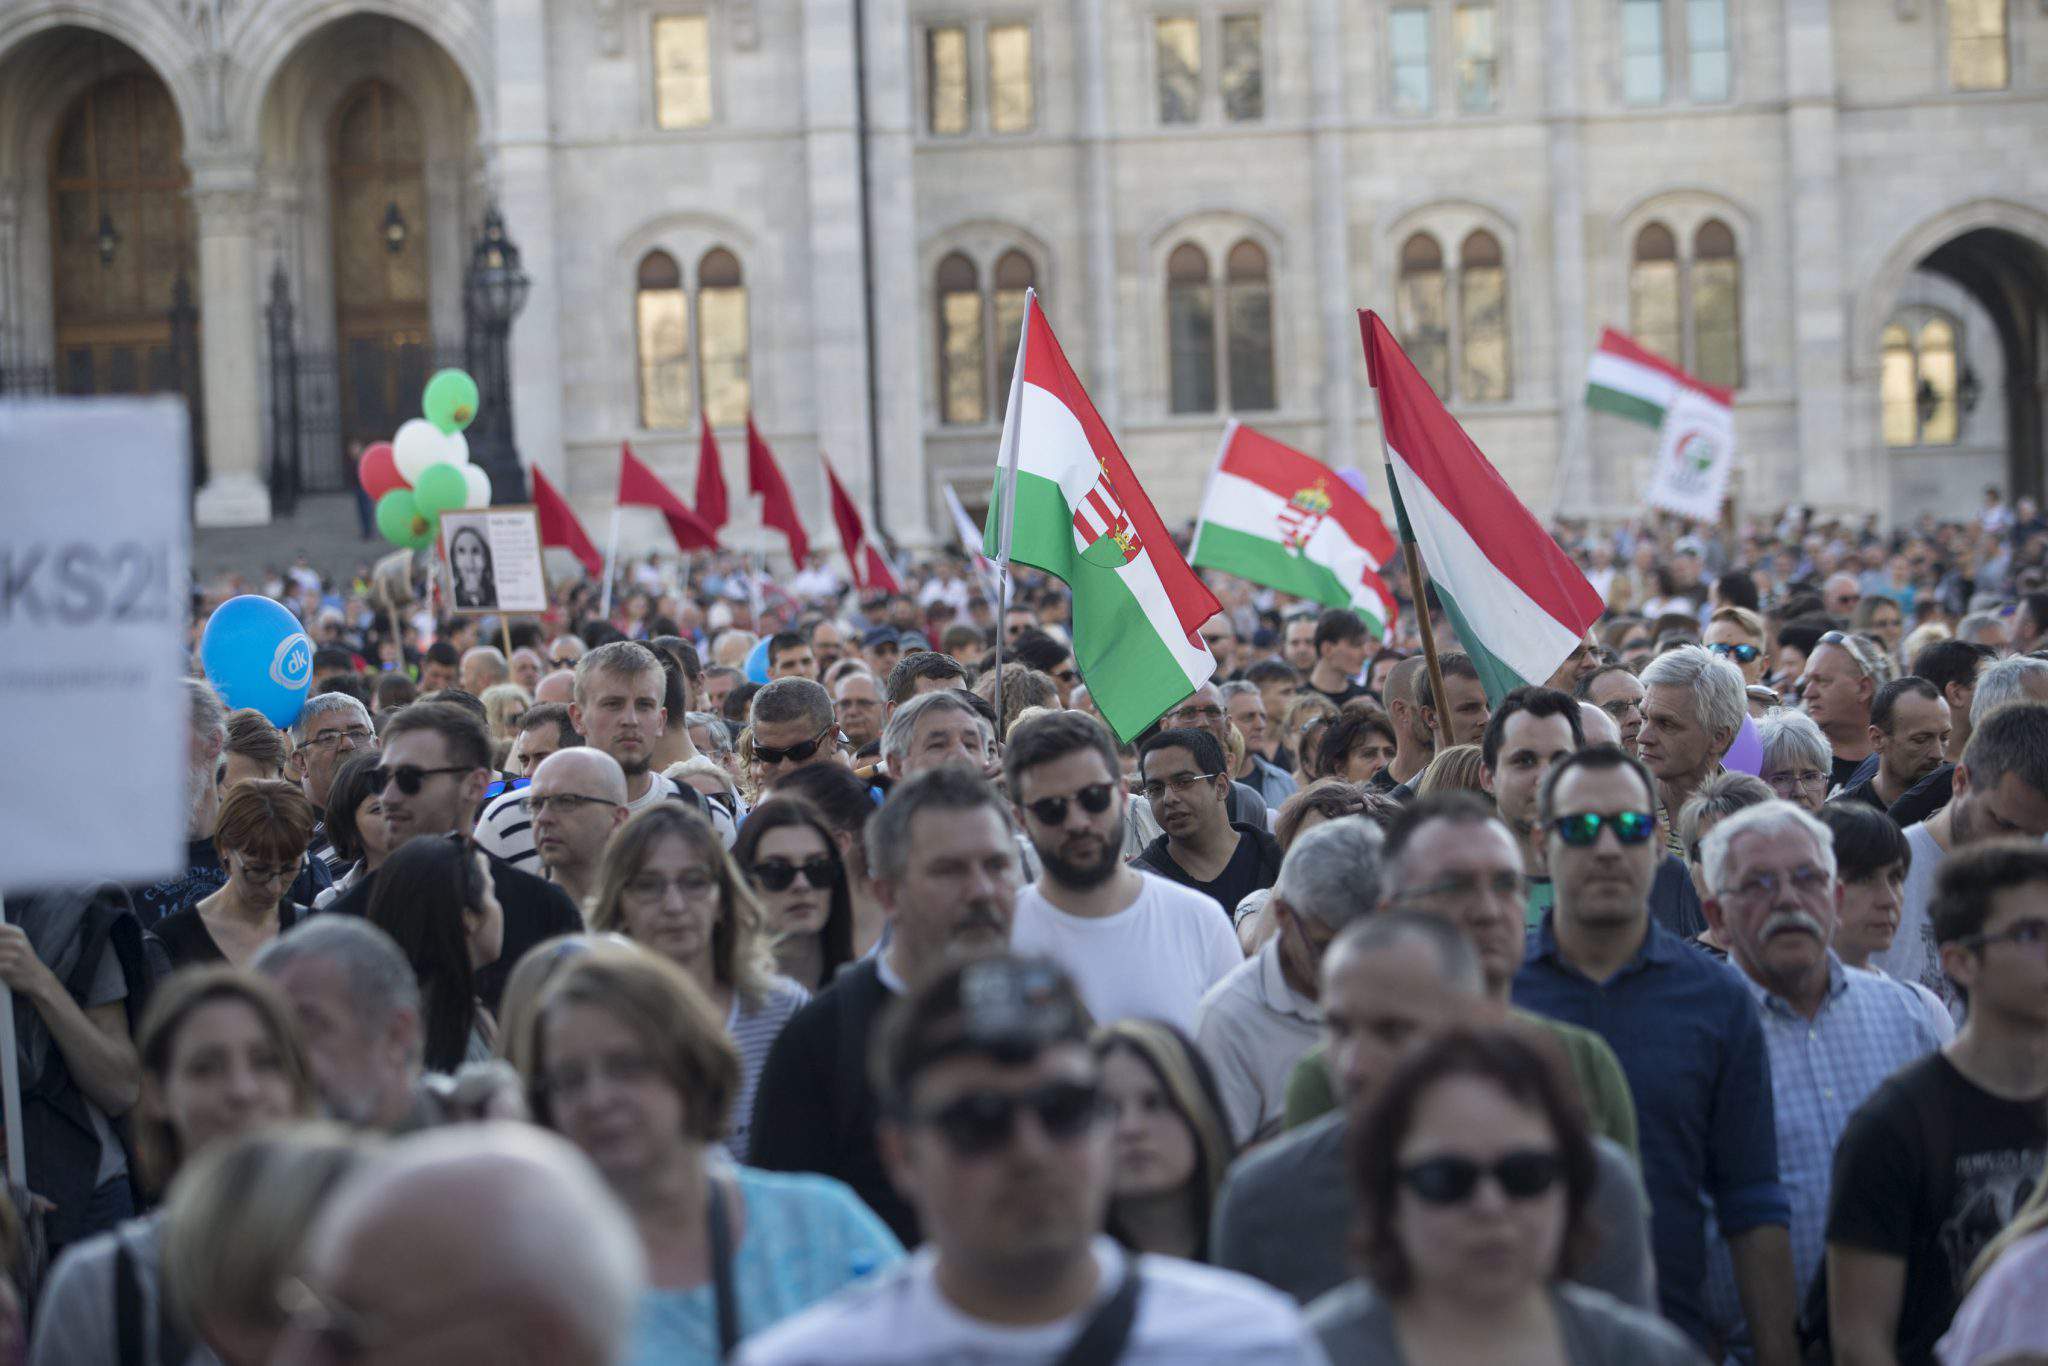 बुडापेस्ट में लोकतंत्र के लिए प्रदर्शन करते प्रदर्शनकारी, फोटो: बालाज़ बेली